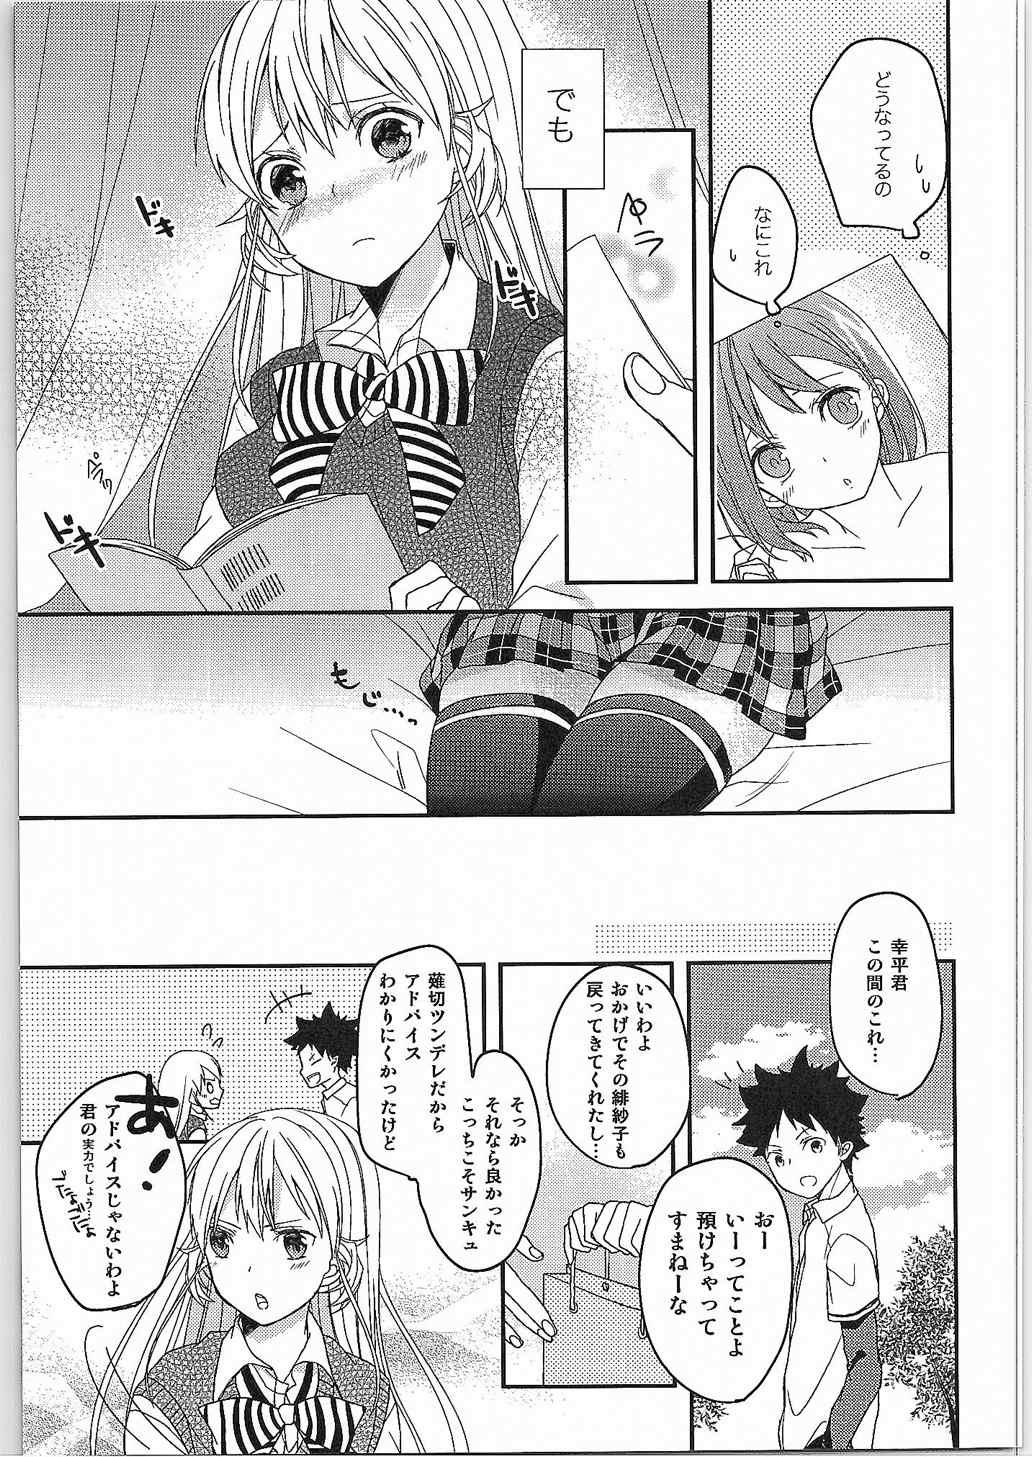 Oralsex Choroiyo Erina-sama! - Shokugeki no soma Rubia - Page 5